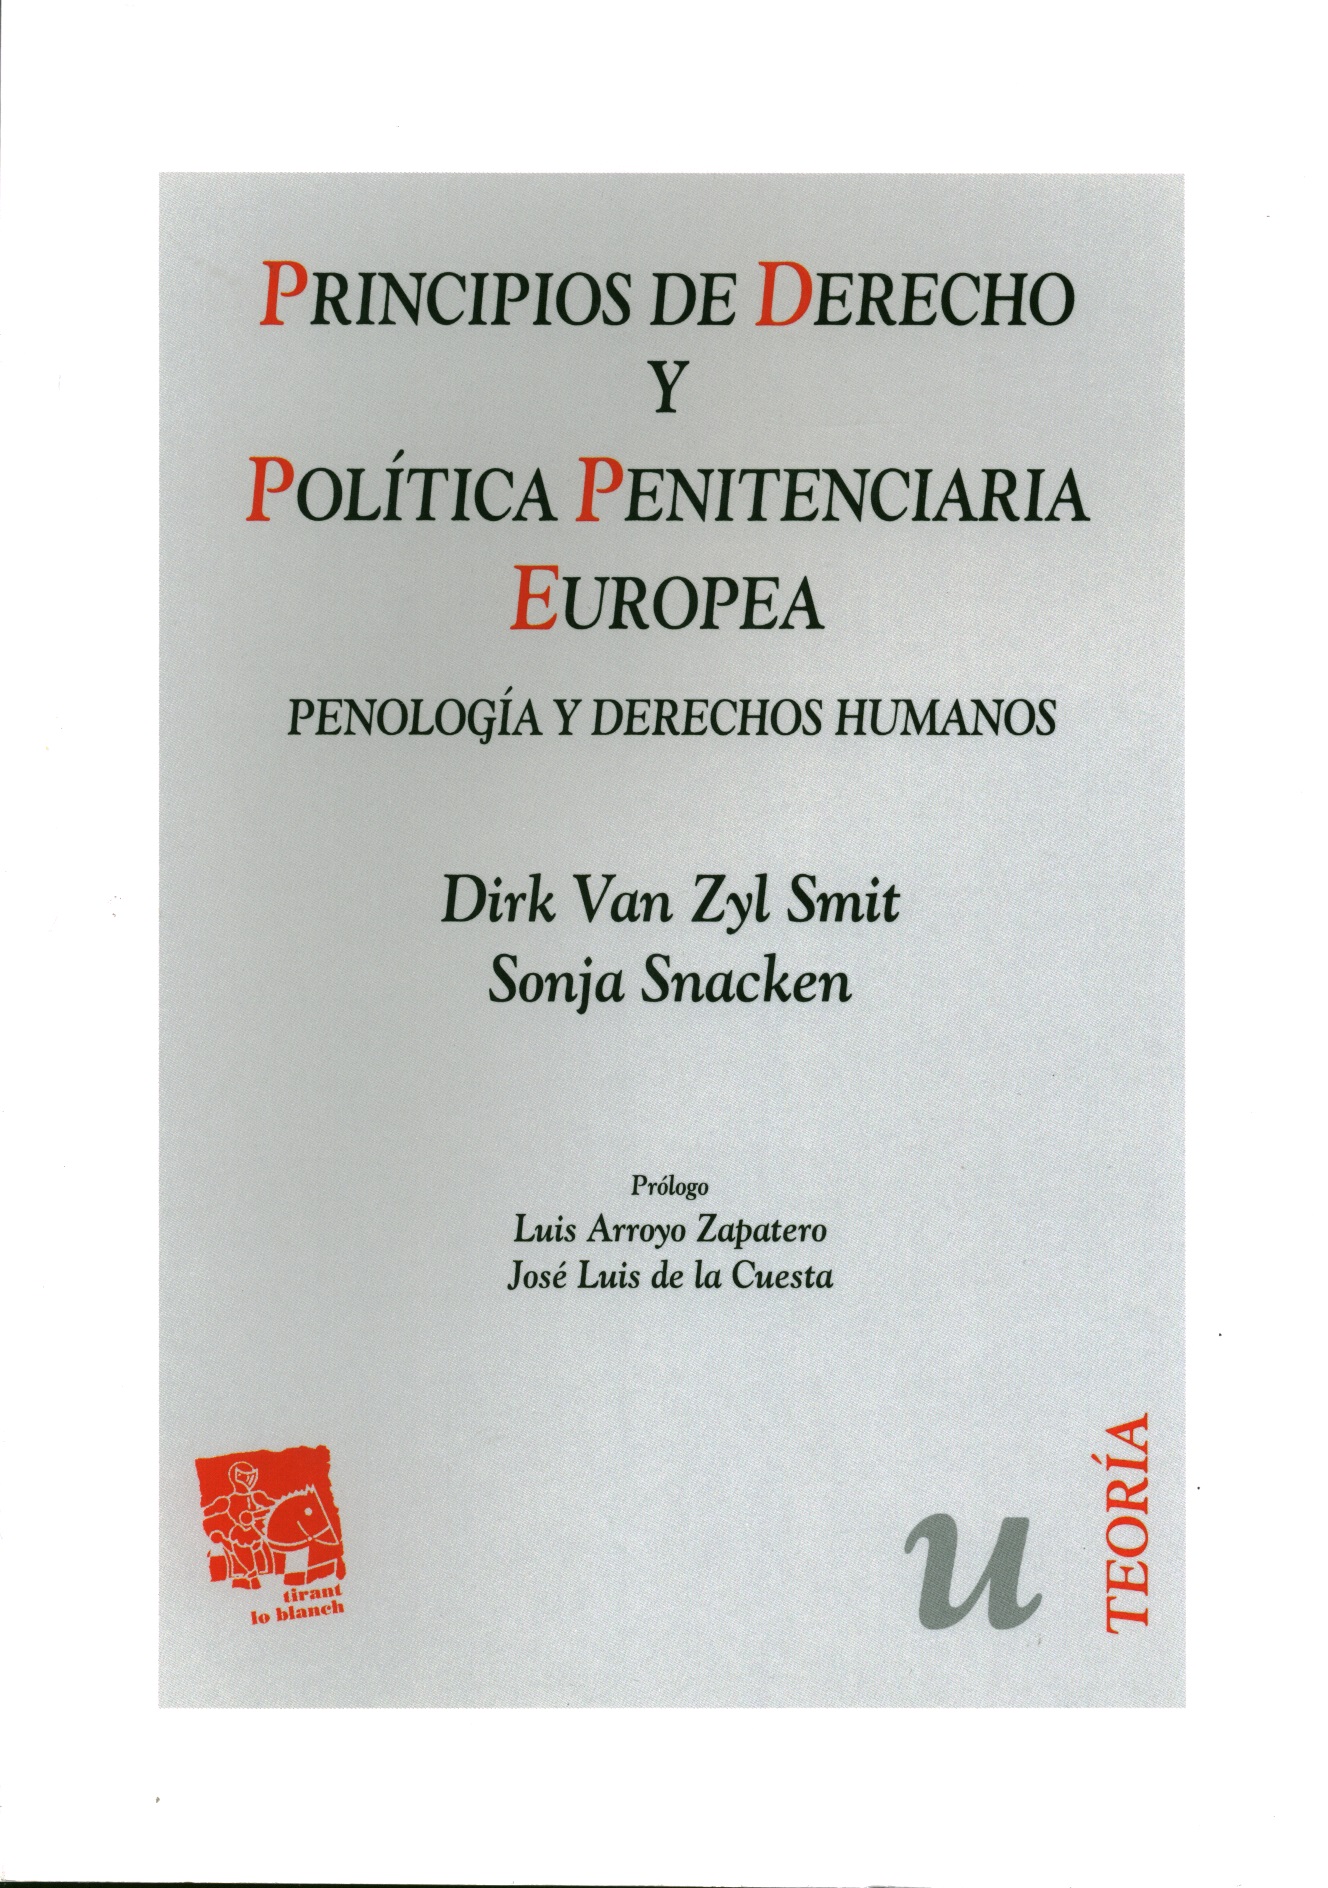 Principios de derecho y política penitenciaria europea. Penología y derechos humanos